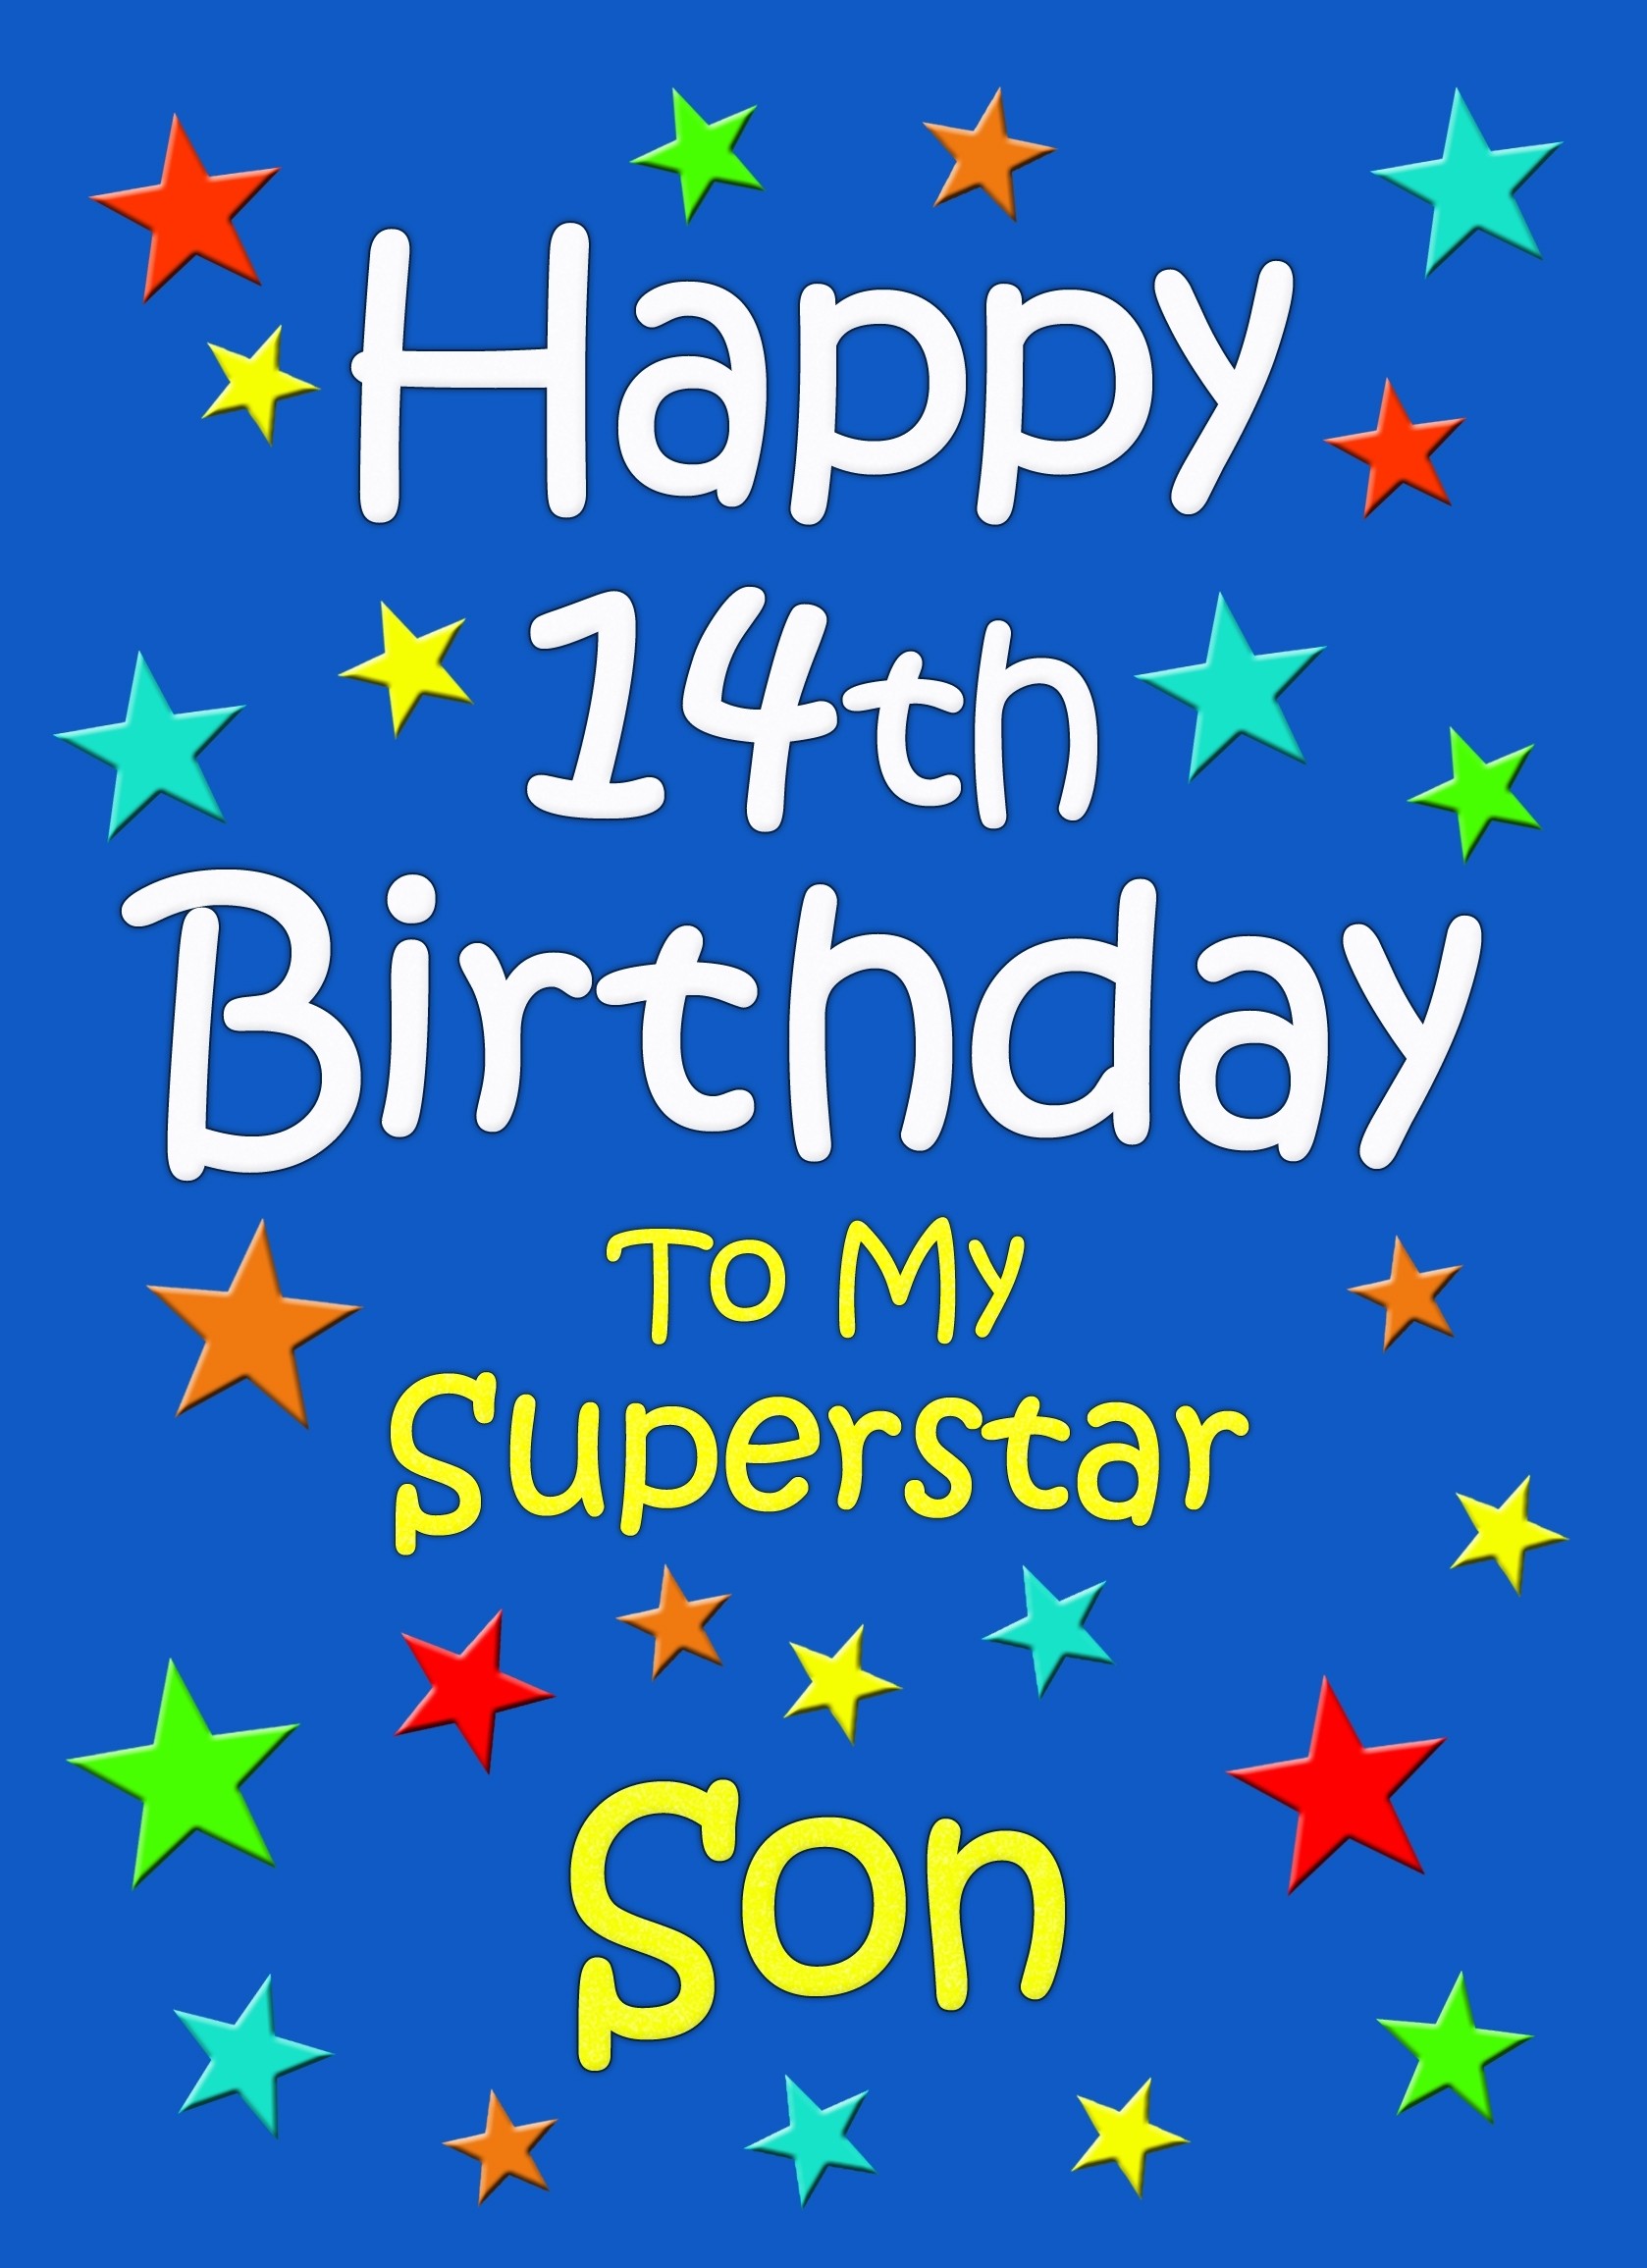 Son 14th Birthday Card (Blue)